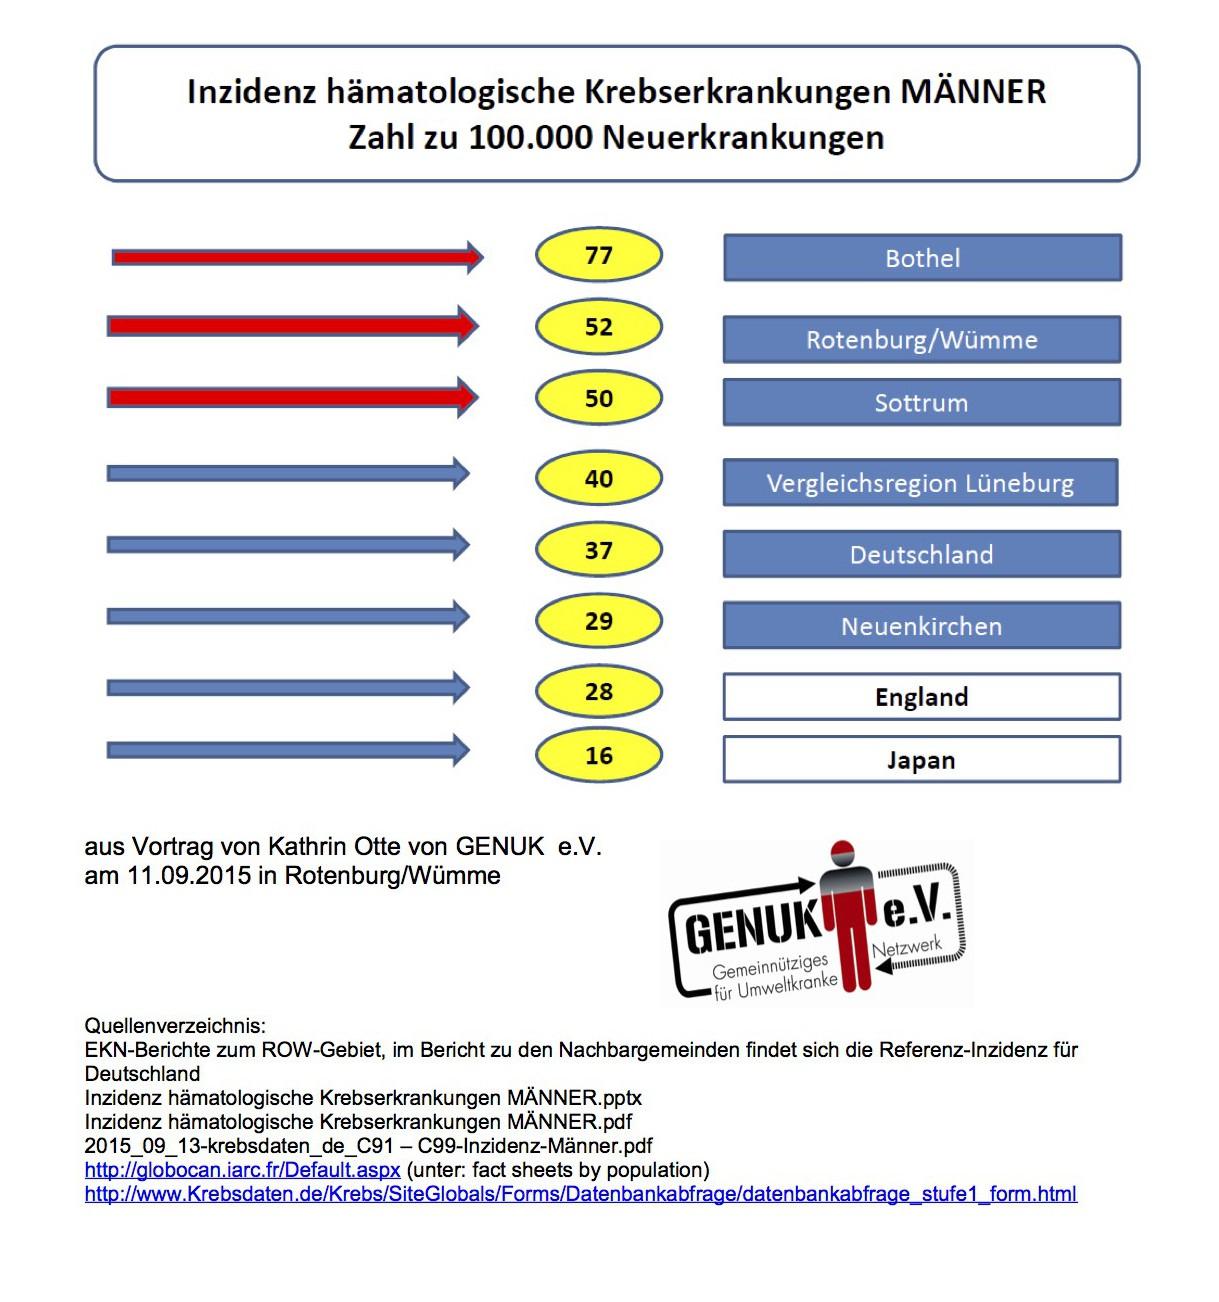 K.Otte_14.09.15_Inzidenz hämatologische Erkrankungen Männer aus Vortrag Rotenburg-1_11.09.15